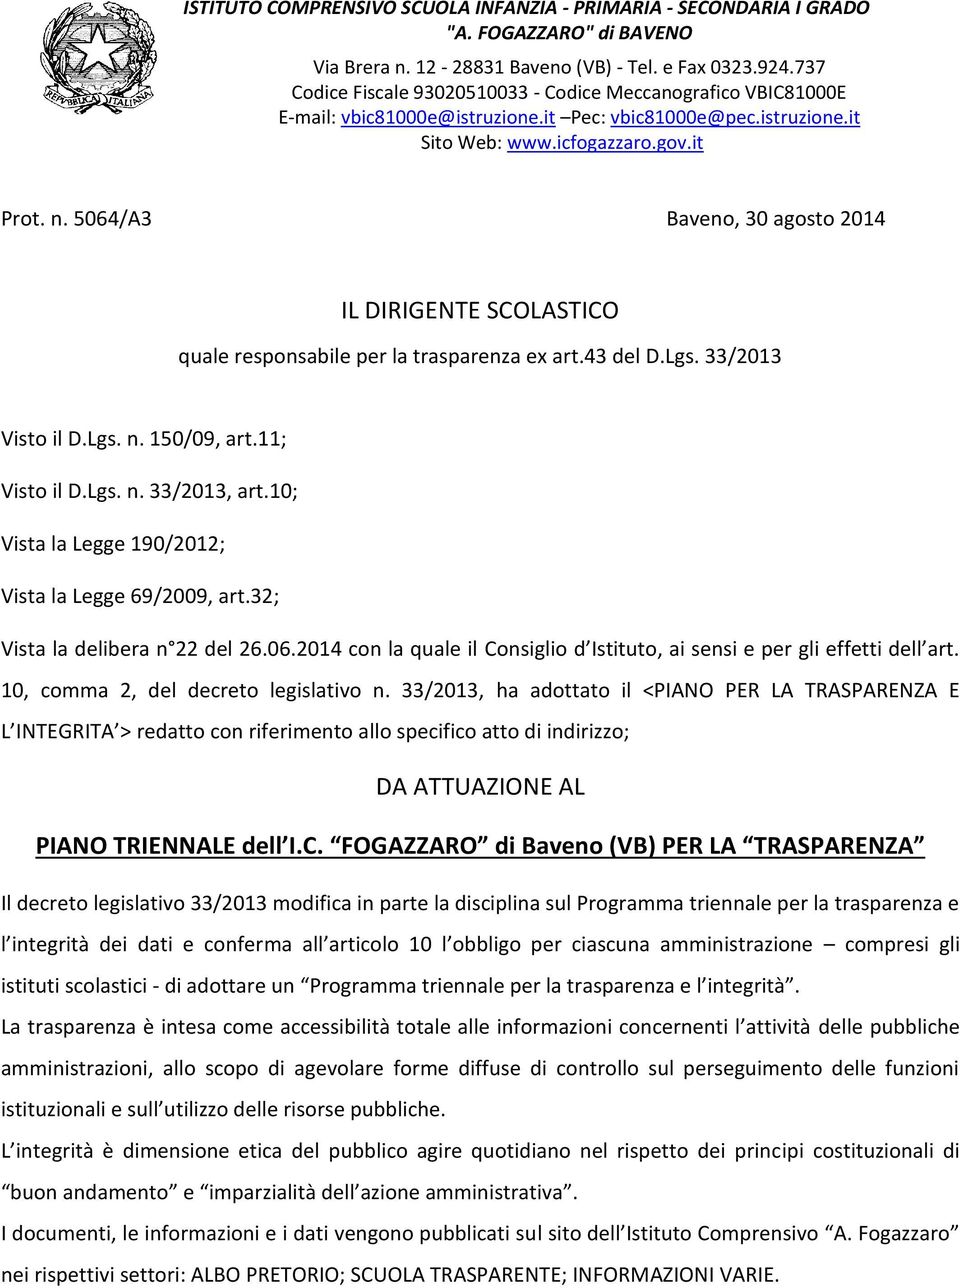 5064/A3 Baveno, 30 agosto 2014 IL DIRIGENTE SCOLASTICO quale responsabile per la trasparenza ex art.43 del D.Lgs. 33/2013 Visto il D.Lgs. n. 150/09, art.11; Visto il D.Lgs. n. 33/2013, art.